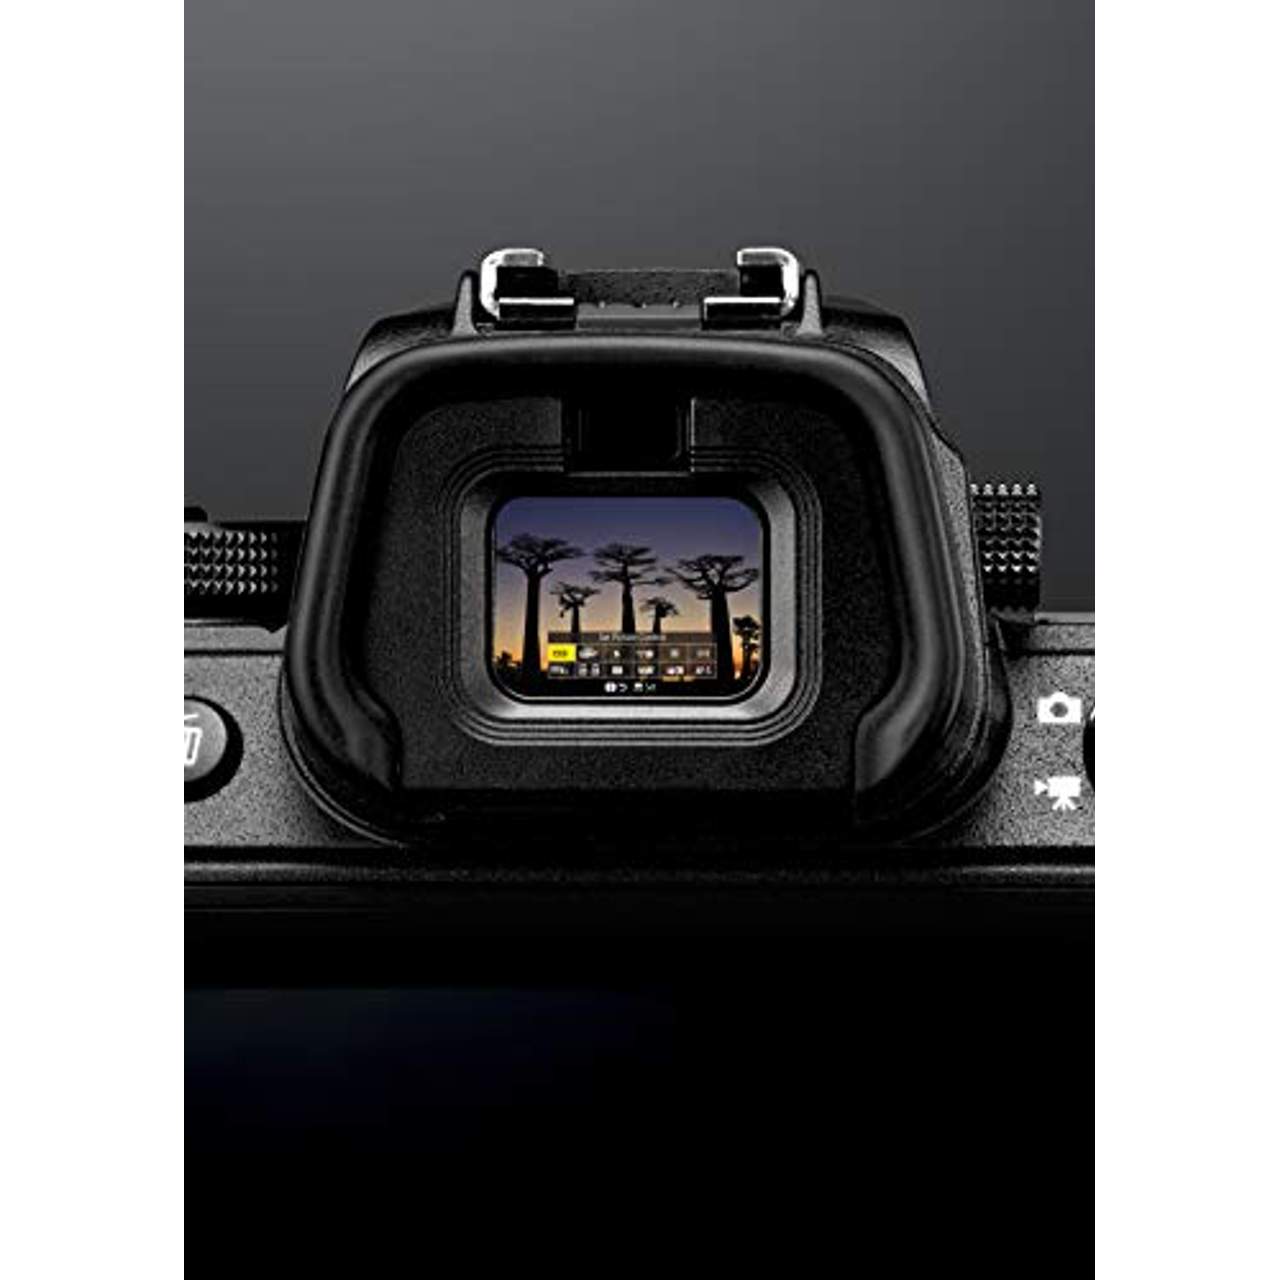 Nikon Z6 System Digitalkamera Kit 24-70 mm 1:4 S